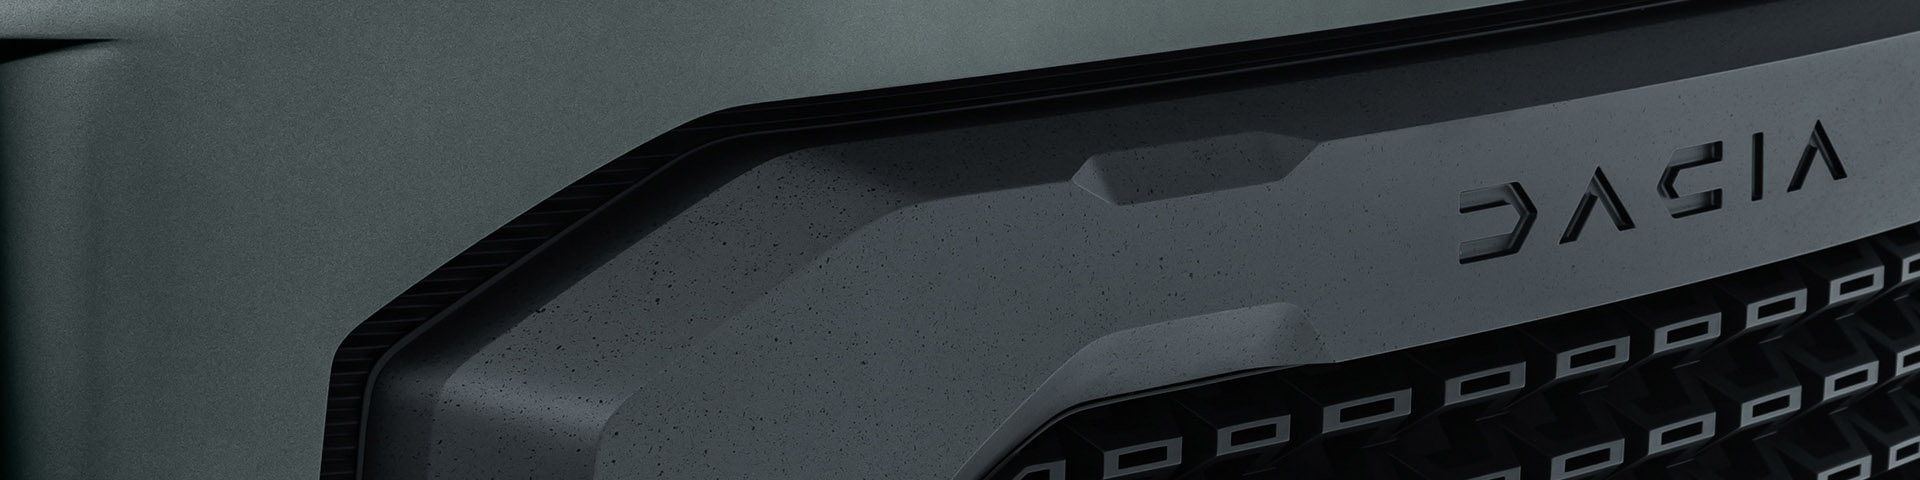 Dacia Sandero Stepway Hatchback Backdrop